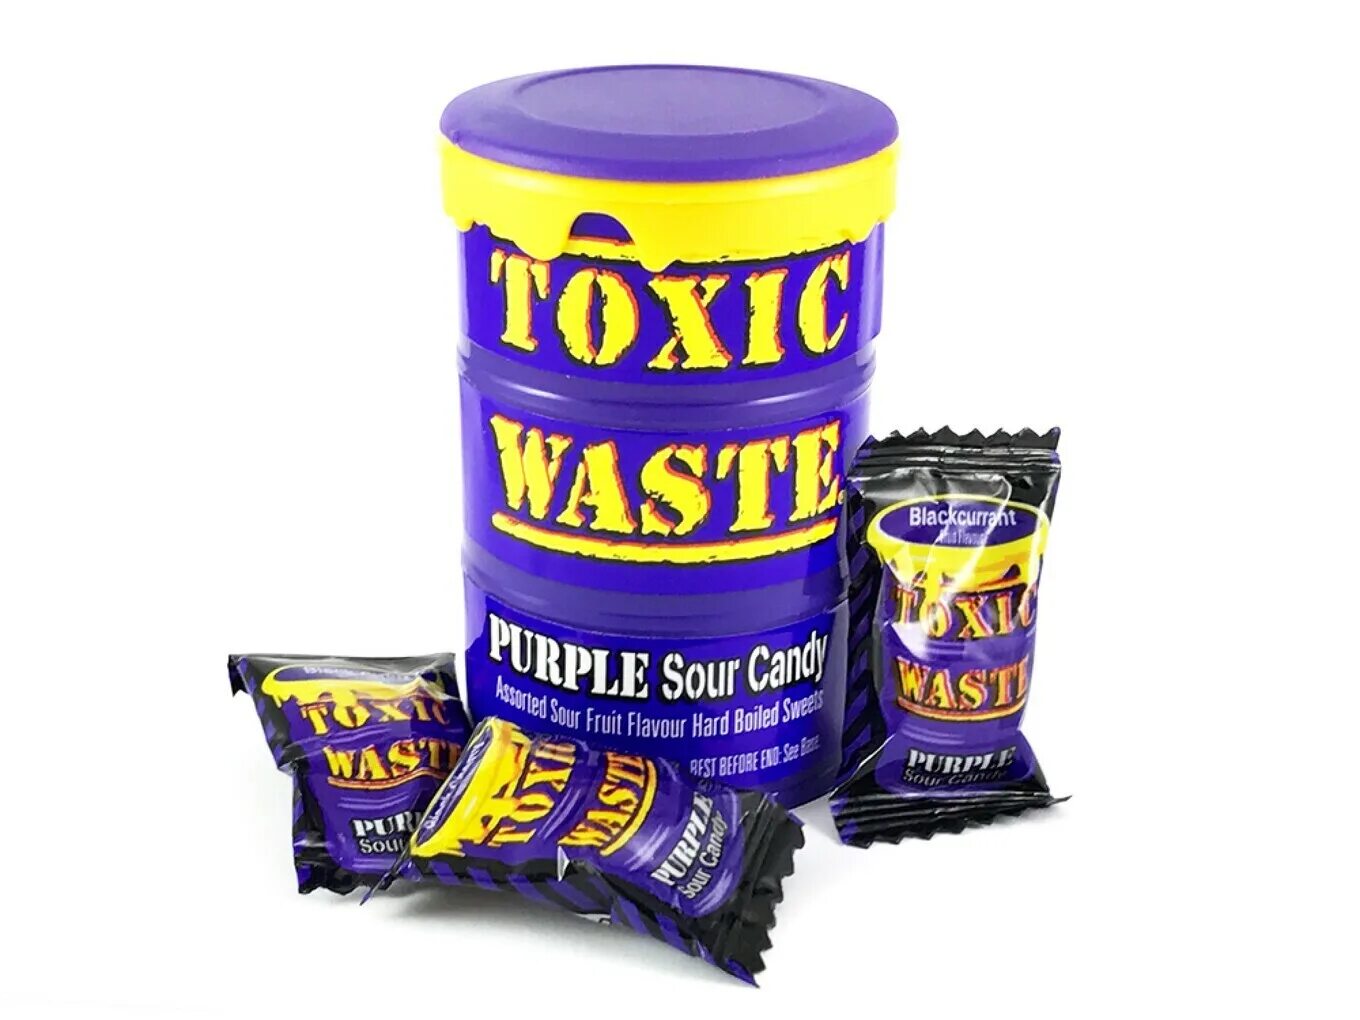 Toxic waste конфеты. Леденцы Toxic waste Purple 42гр. Леденцы Toxic waste Tub Purple 42 гр. Кислые конфеты Toxic waste. Токсик ттд